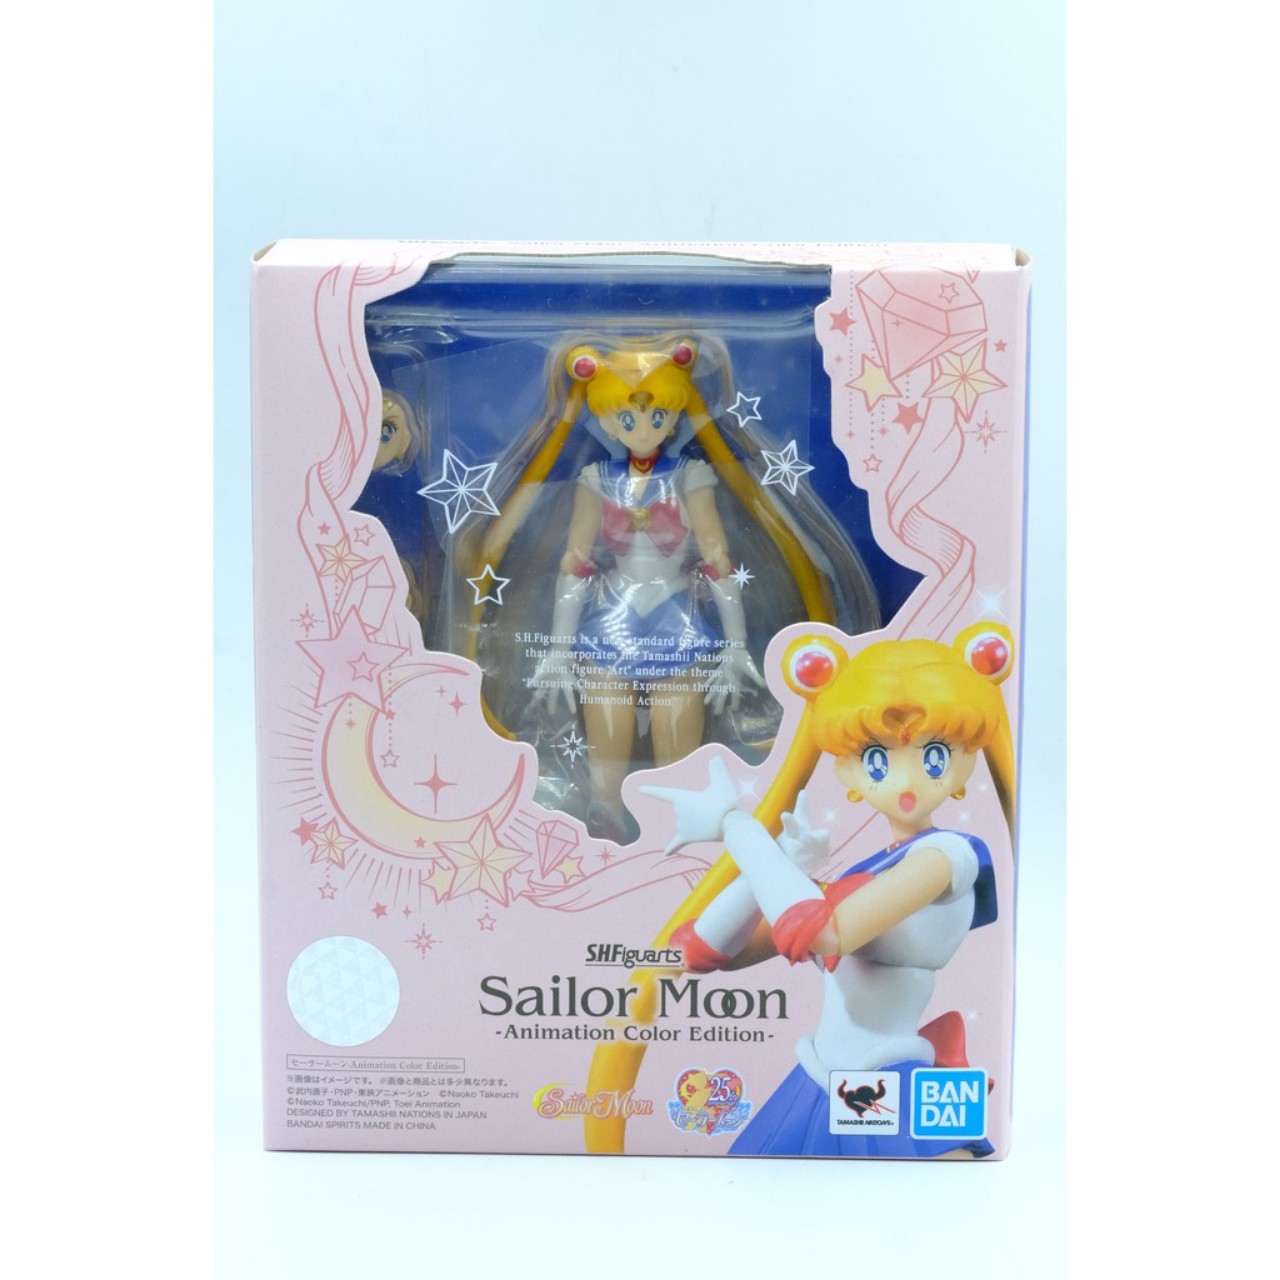 Mô Hình Figure Sailor Moon  Thủy Thủ  Công Chúa Mặt Trăng  Trăng Khuyết  Giá Tốt  BBCosplaycom